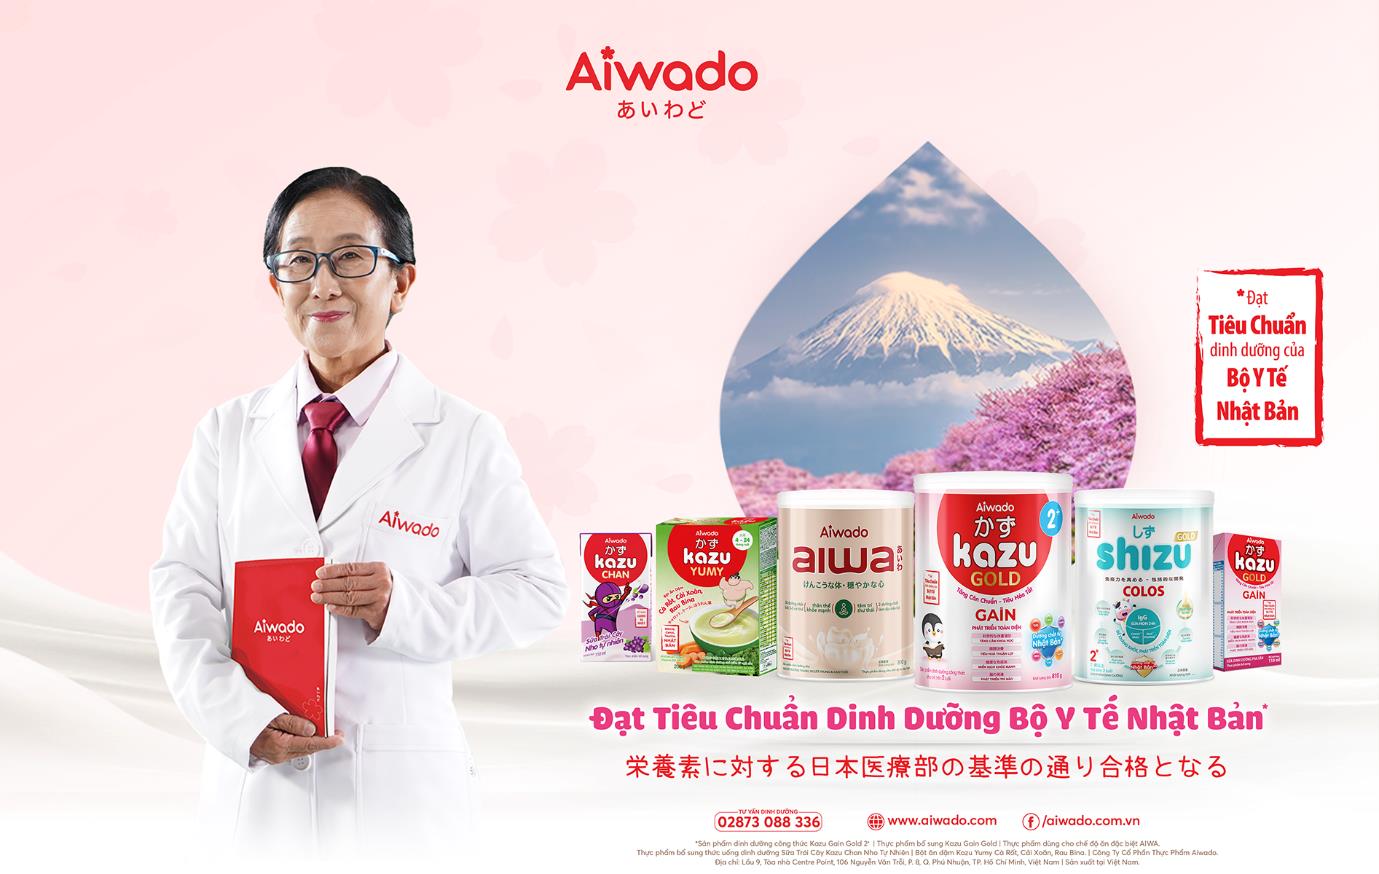 Quỹ Aiwado nối dài hành trình vì cộng đồng với 10.000 ly sữa trao tặng Bệnh viện Nhi Trung ương - Ảnh 3.